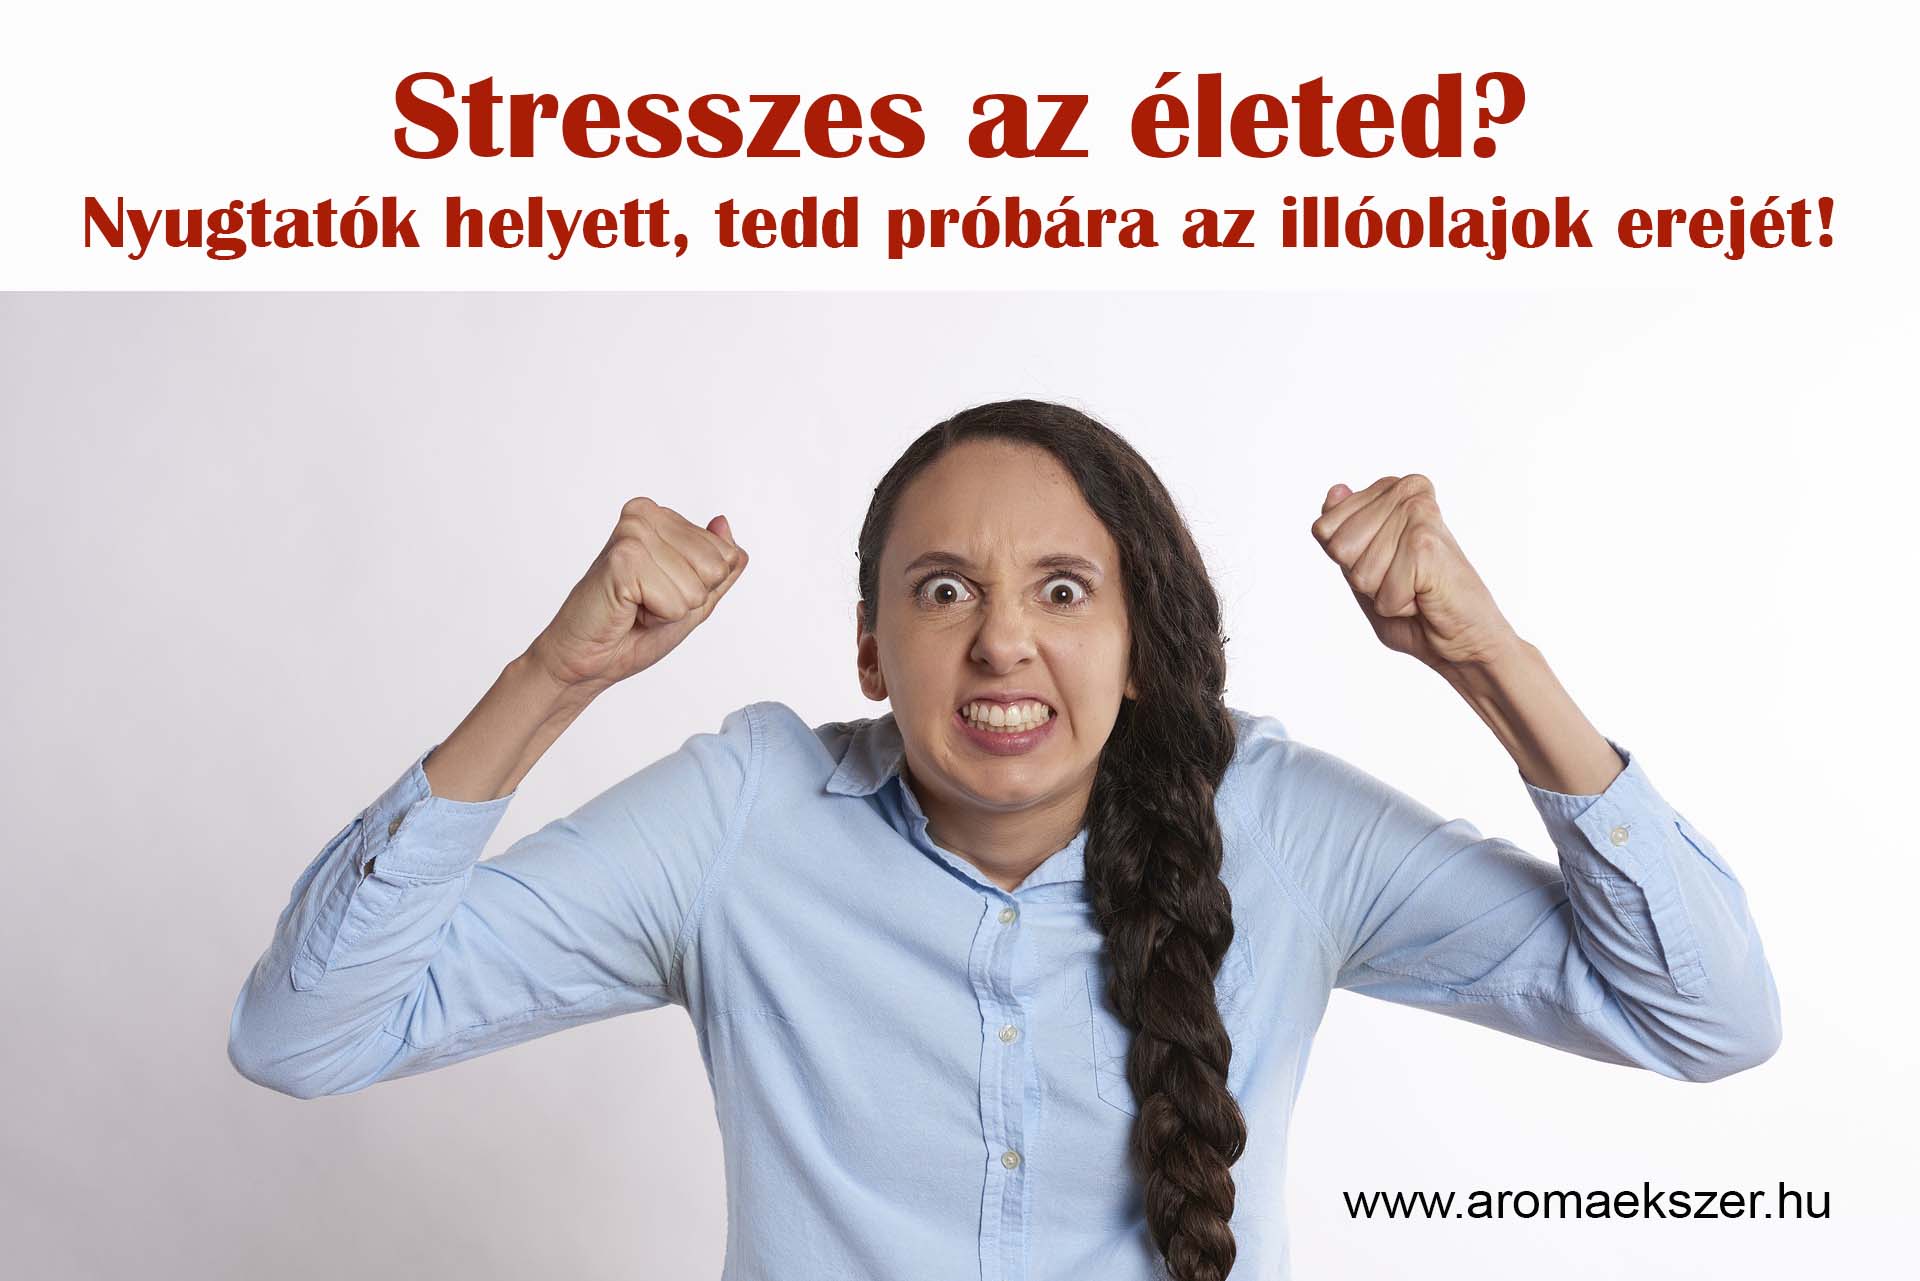 stresszes_az_eleted - aromaekszer.hu